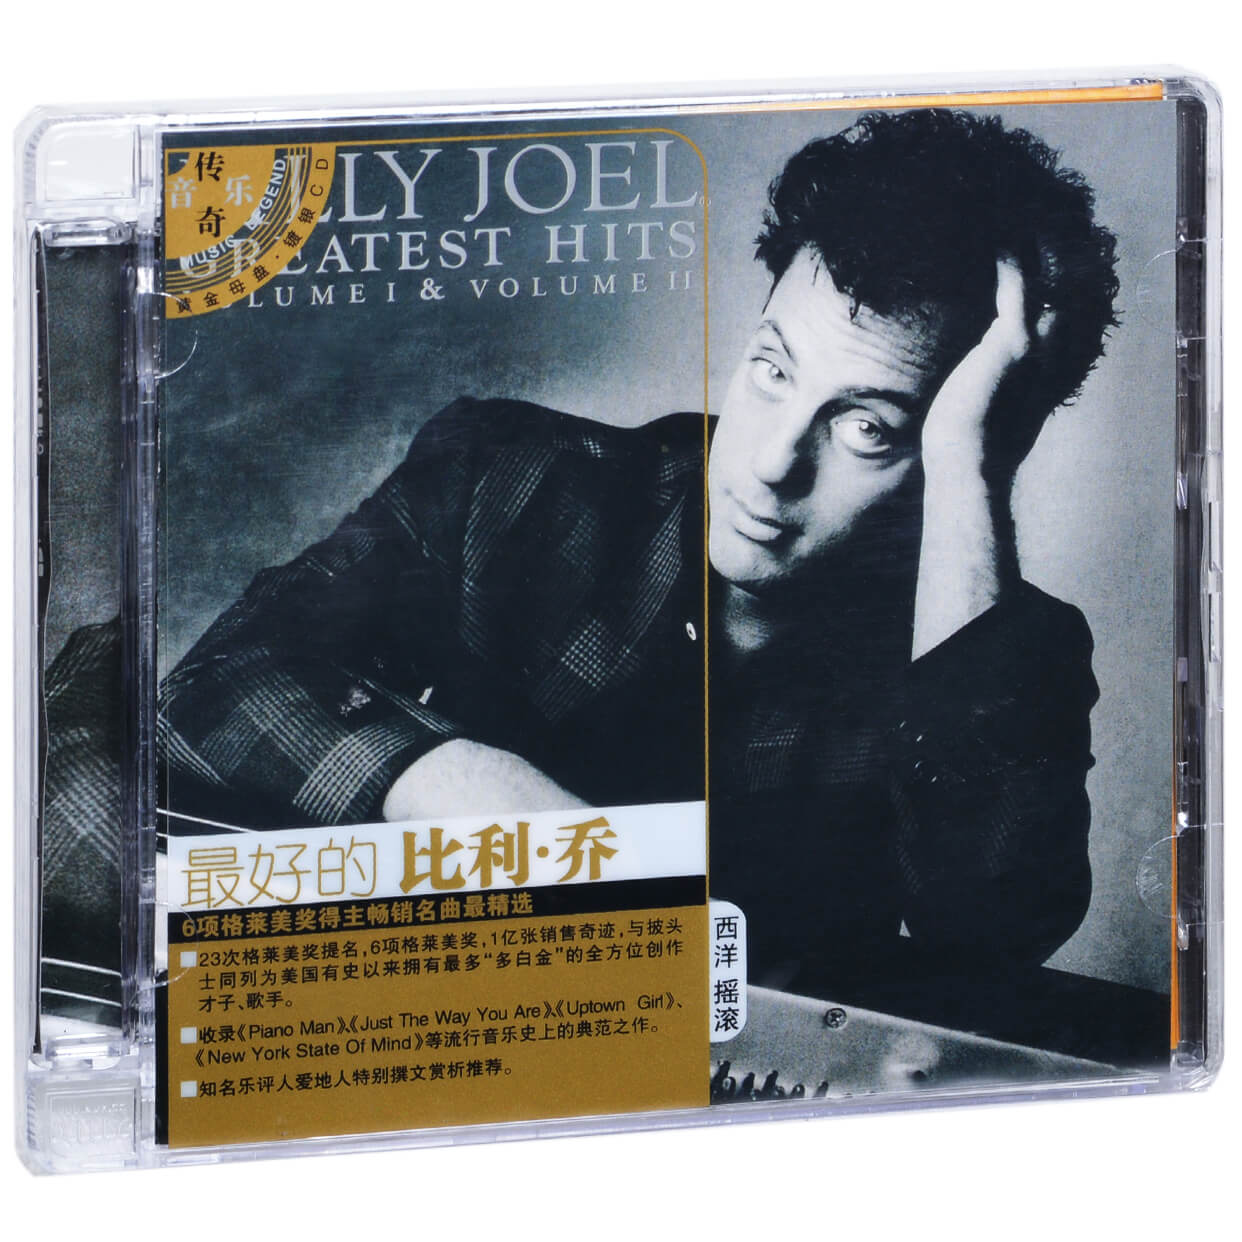 正版特价最好的比利乔 Billy Joel精选专辑唱片 2CD碟片-封面